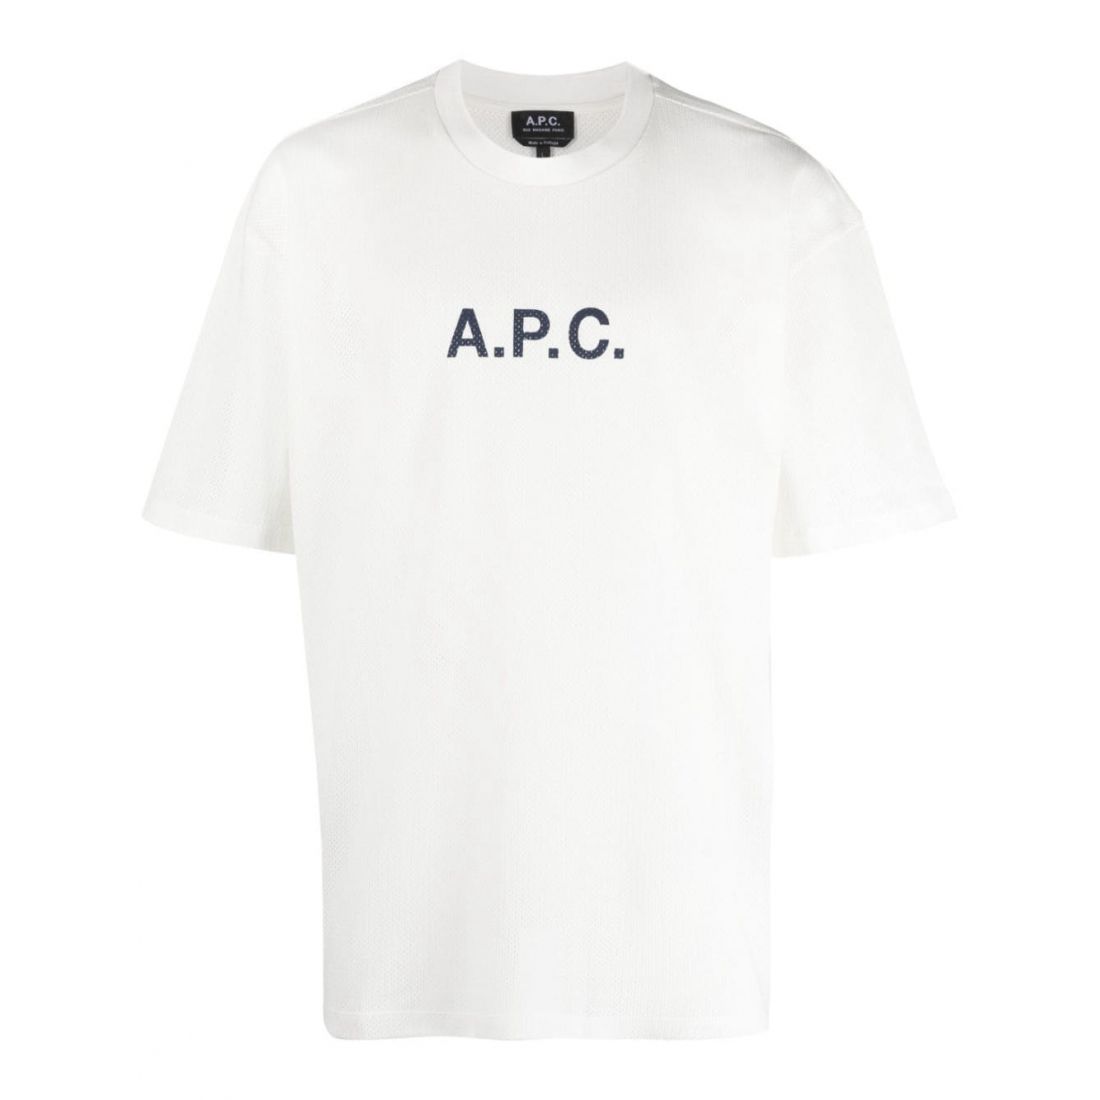 A.P.C. - T-shirt 'Moran' pour Hommes